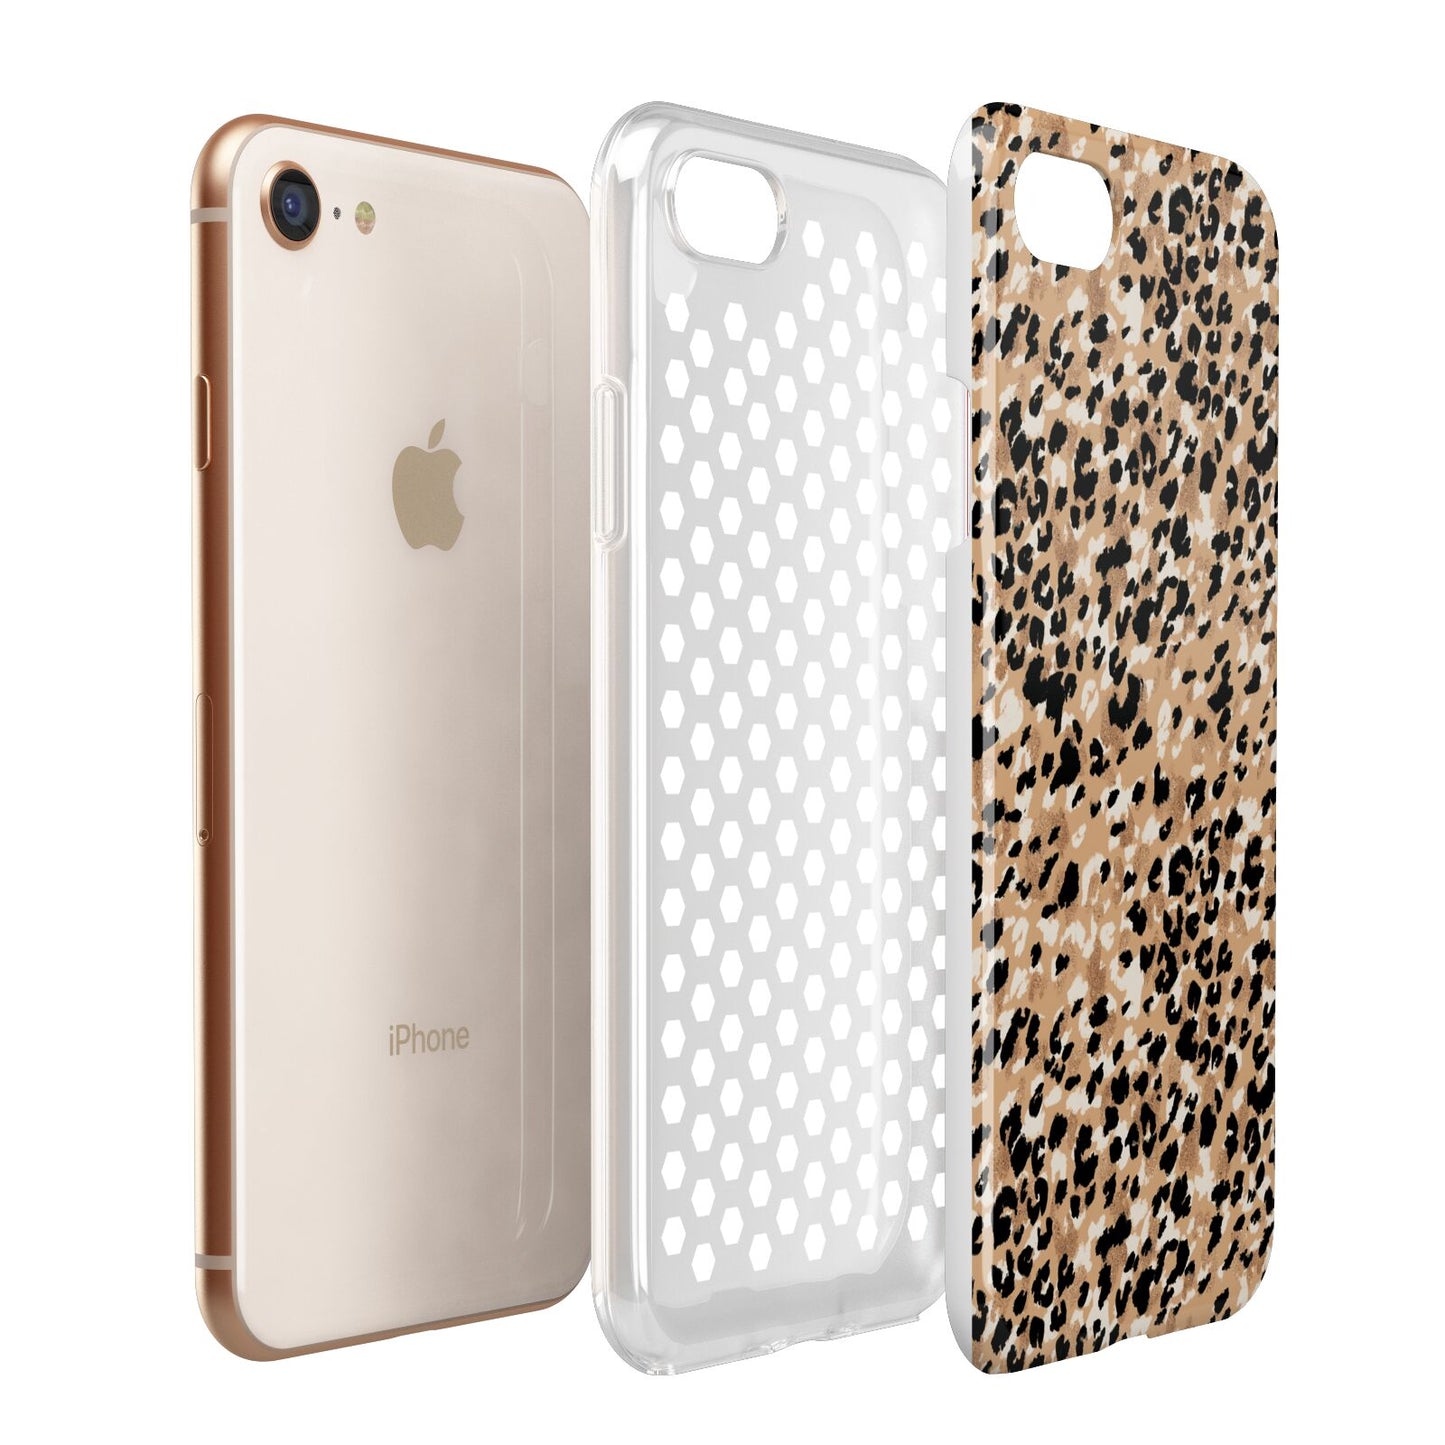 Leopard Print Apple iPhone 7 8 3D Tough Case Expanded View